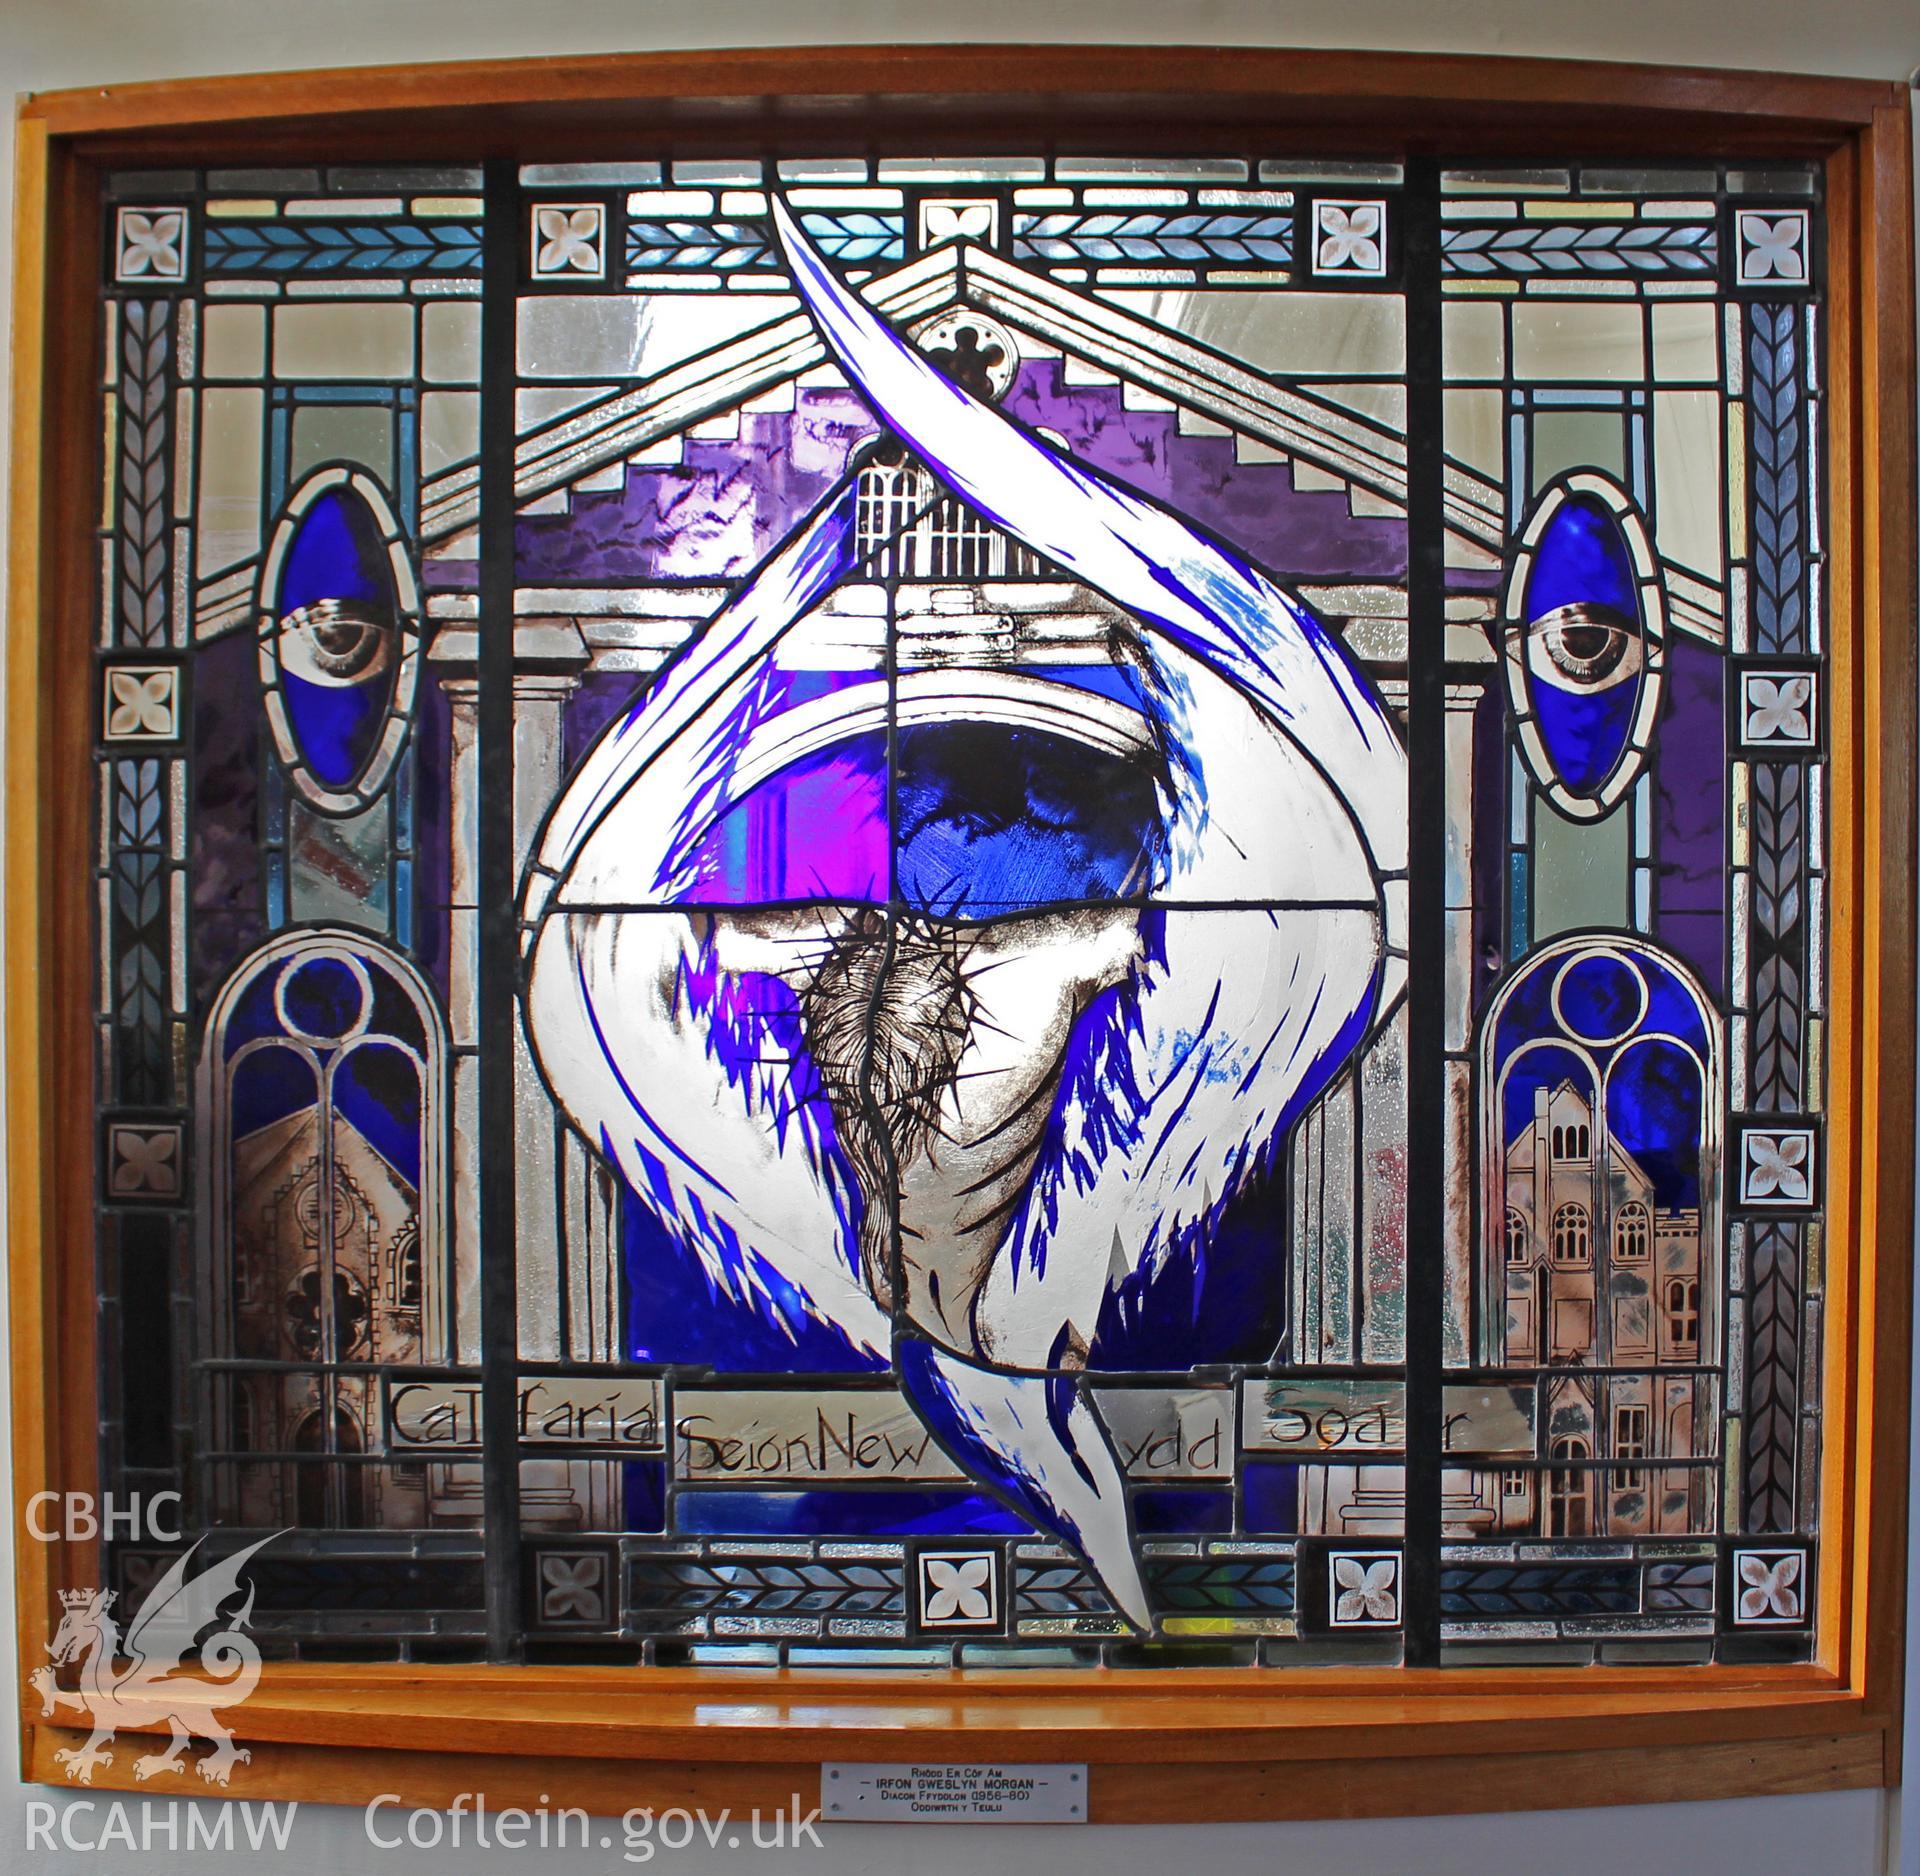 Stained glass window memorial. Inscription-Calfaria Seion Newydd Soar. Plaque: Rhodd Er Cof Am IRFON GWERSLYN MORGAN Diacon Ffyddlon (1956-80) Oddiwrth y Teulu. Photographic survey of Seion Baptist Chapel, Morriston, conducted by Sue Fielding 13/5/2017.